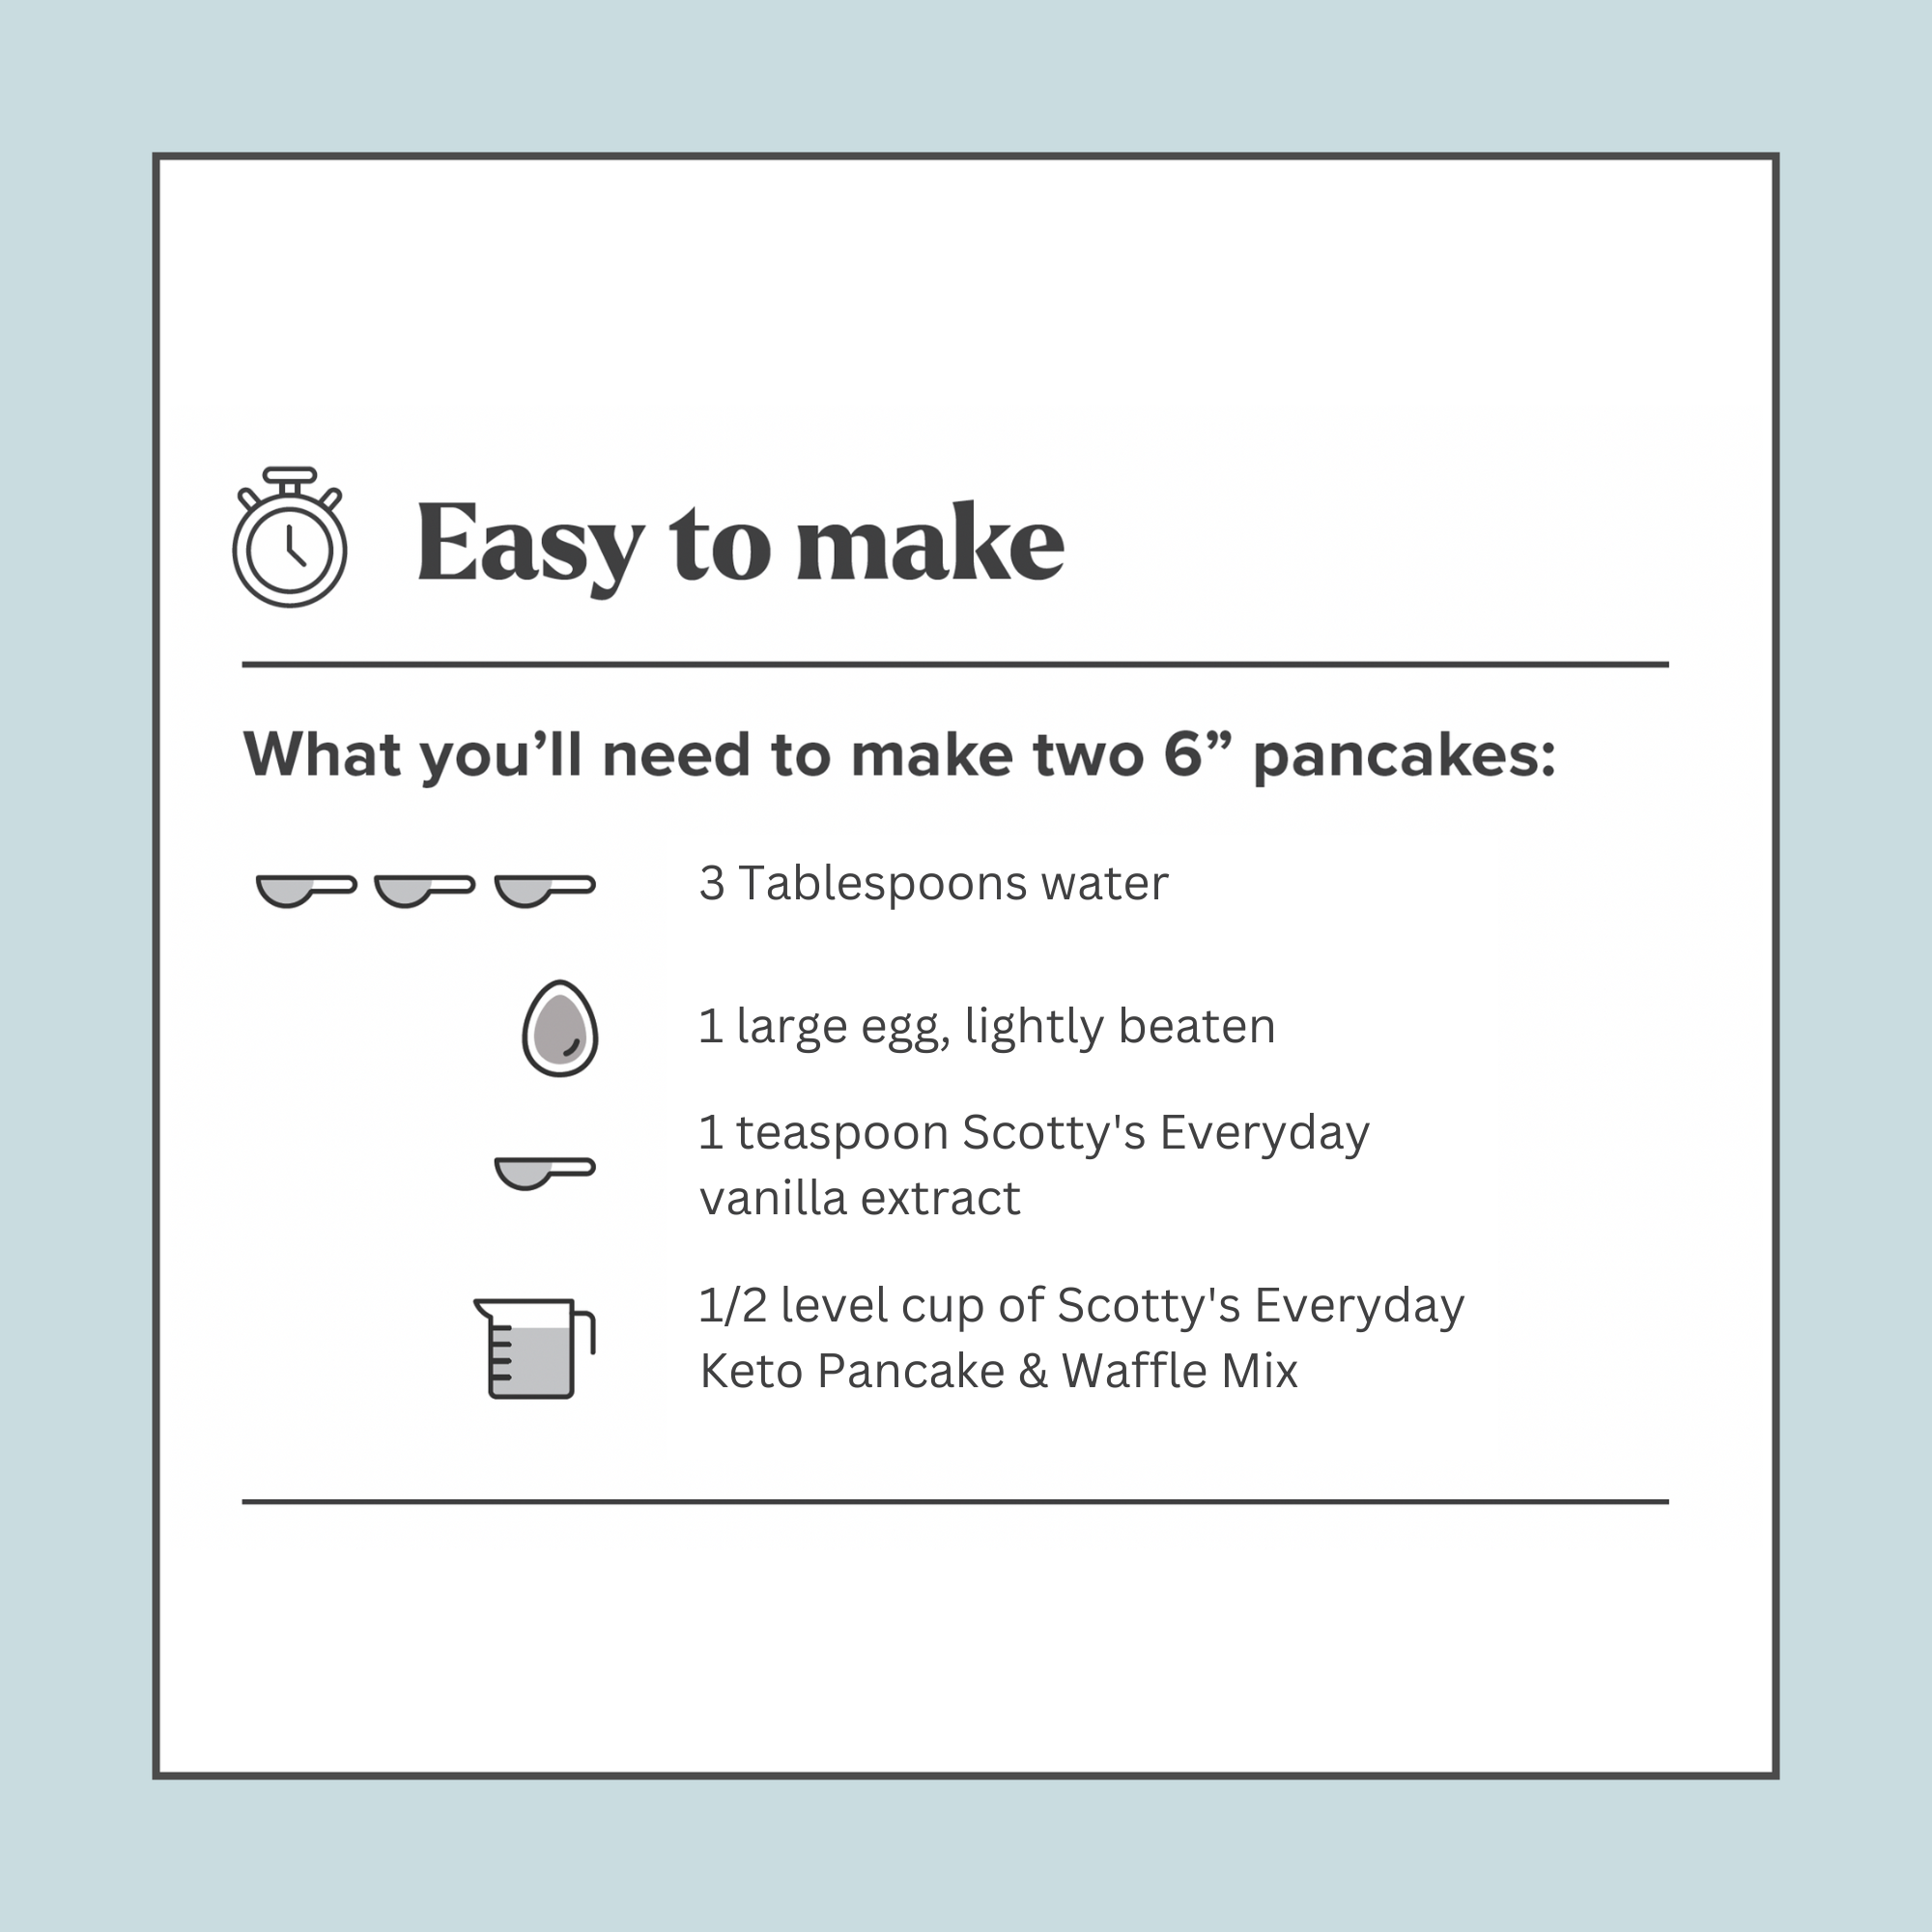 3-Pack Keto Pancake + Waffle Mix